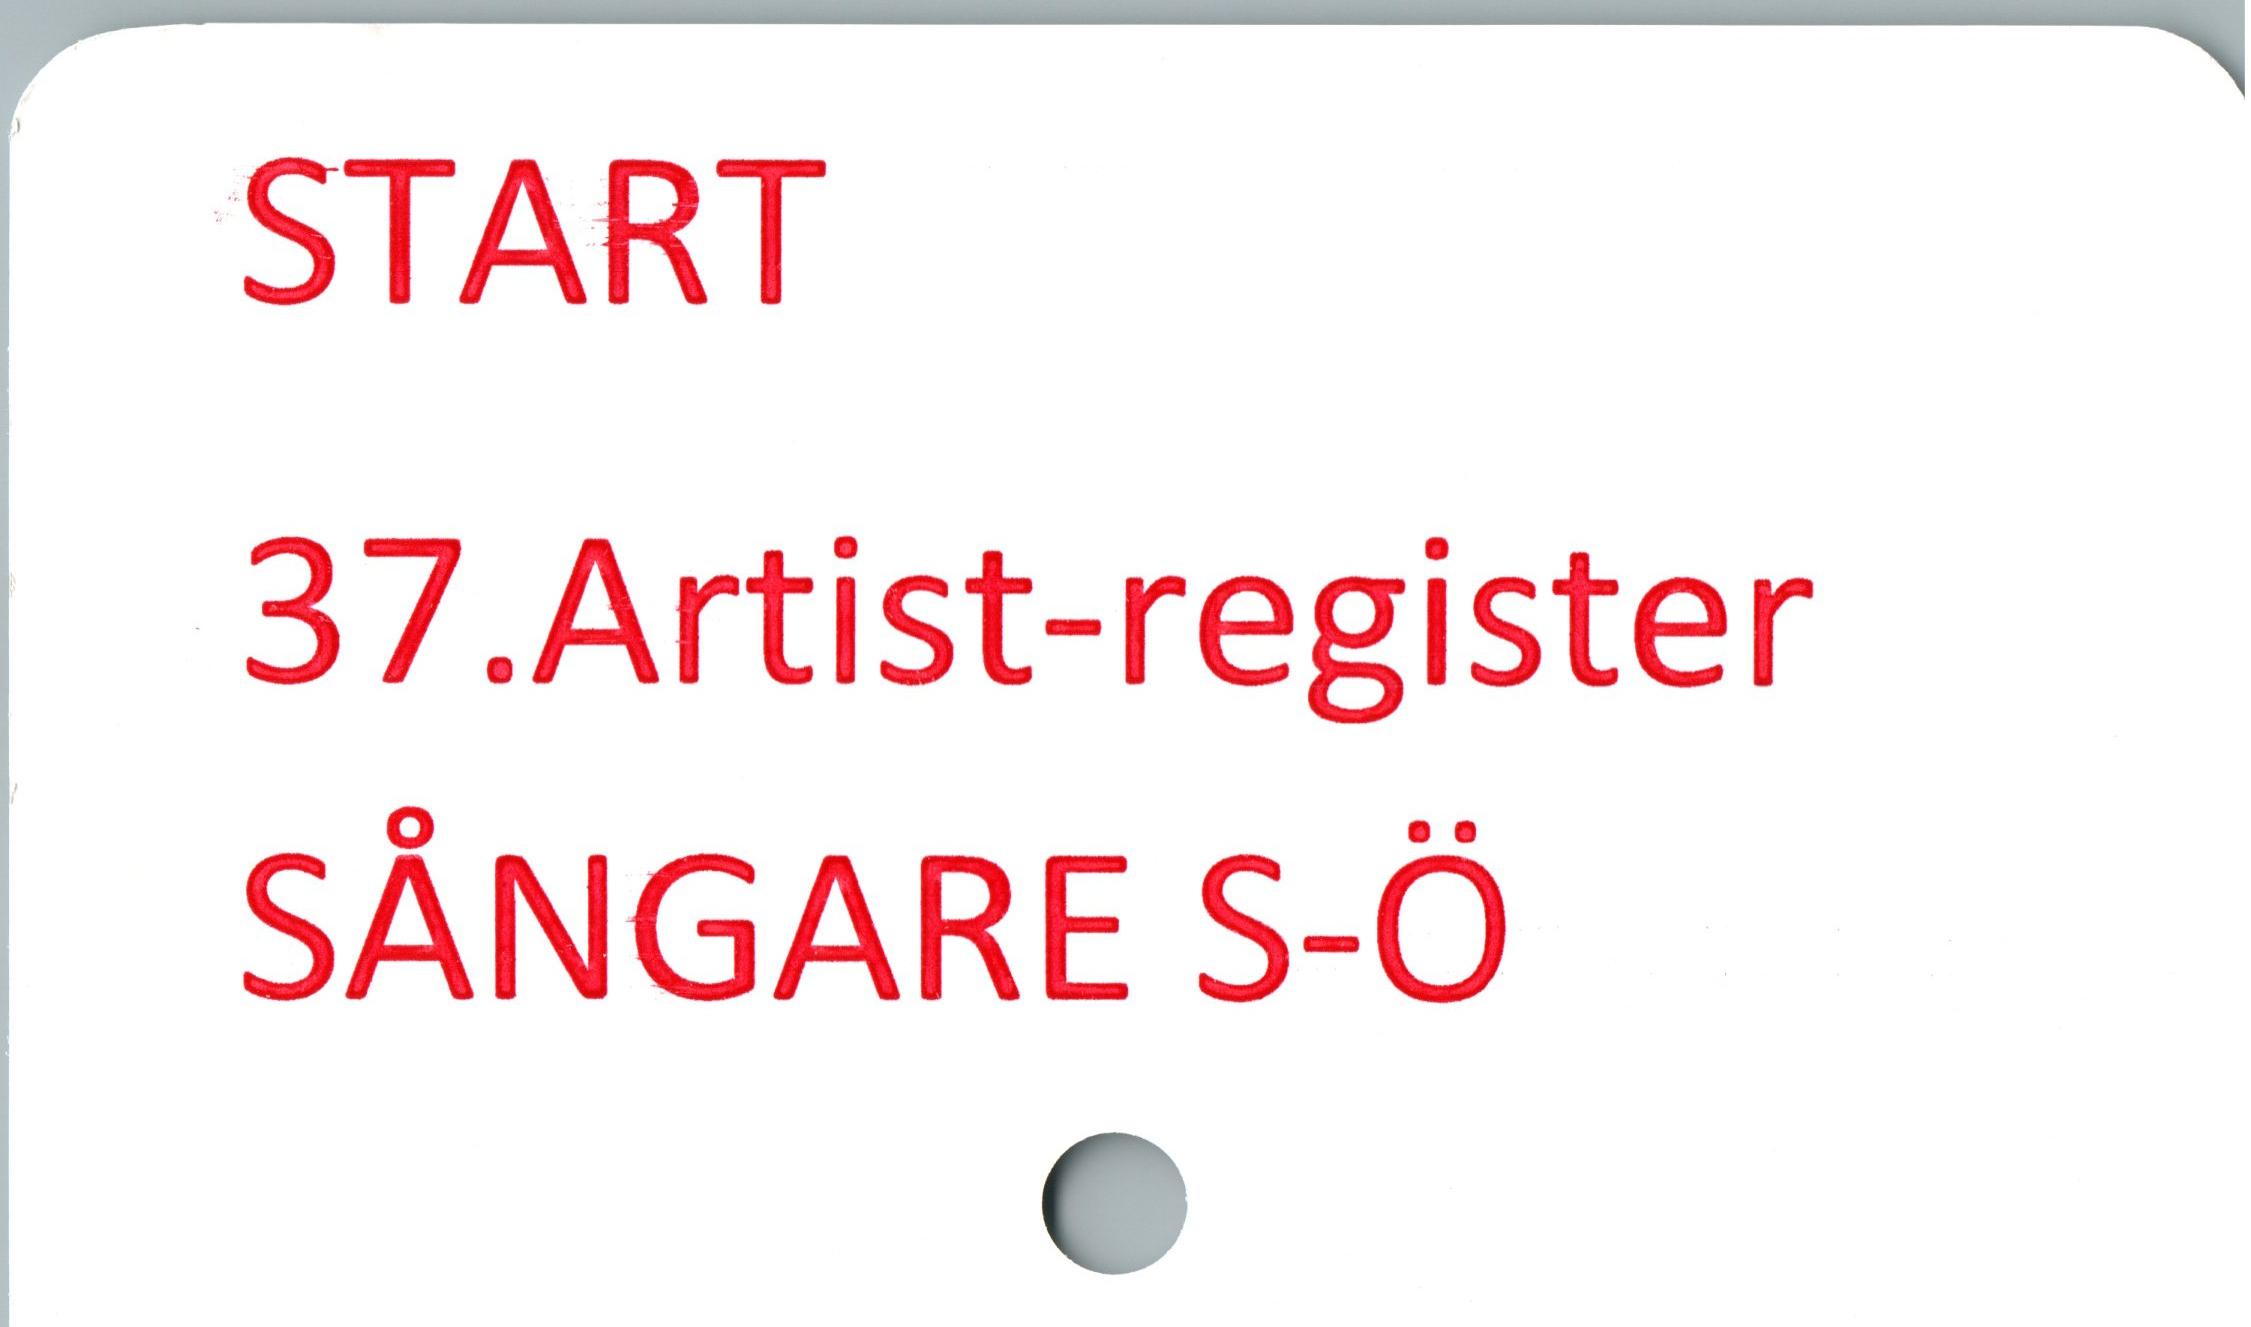  ﻿START
37.Art¡st-reg¡ster SÅNGARE S-Ö